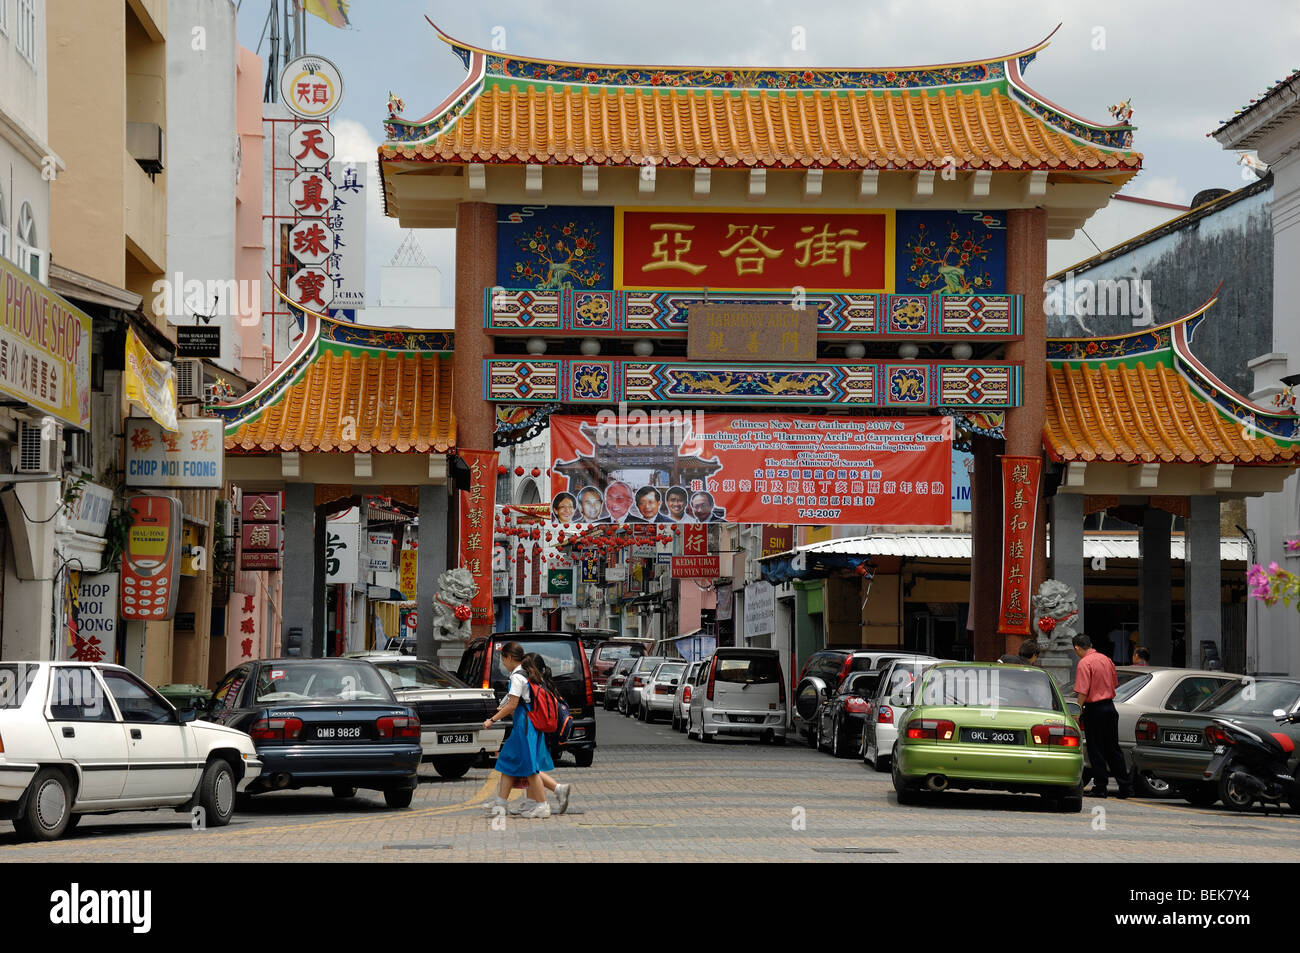 Chinese Arch Gateway or Entrance to Chinatown Kuching Sarawak Malaysia Borneo Stock Photo